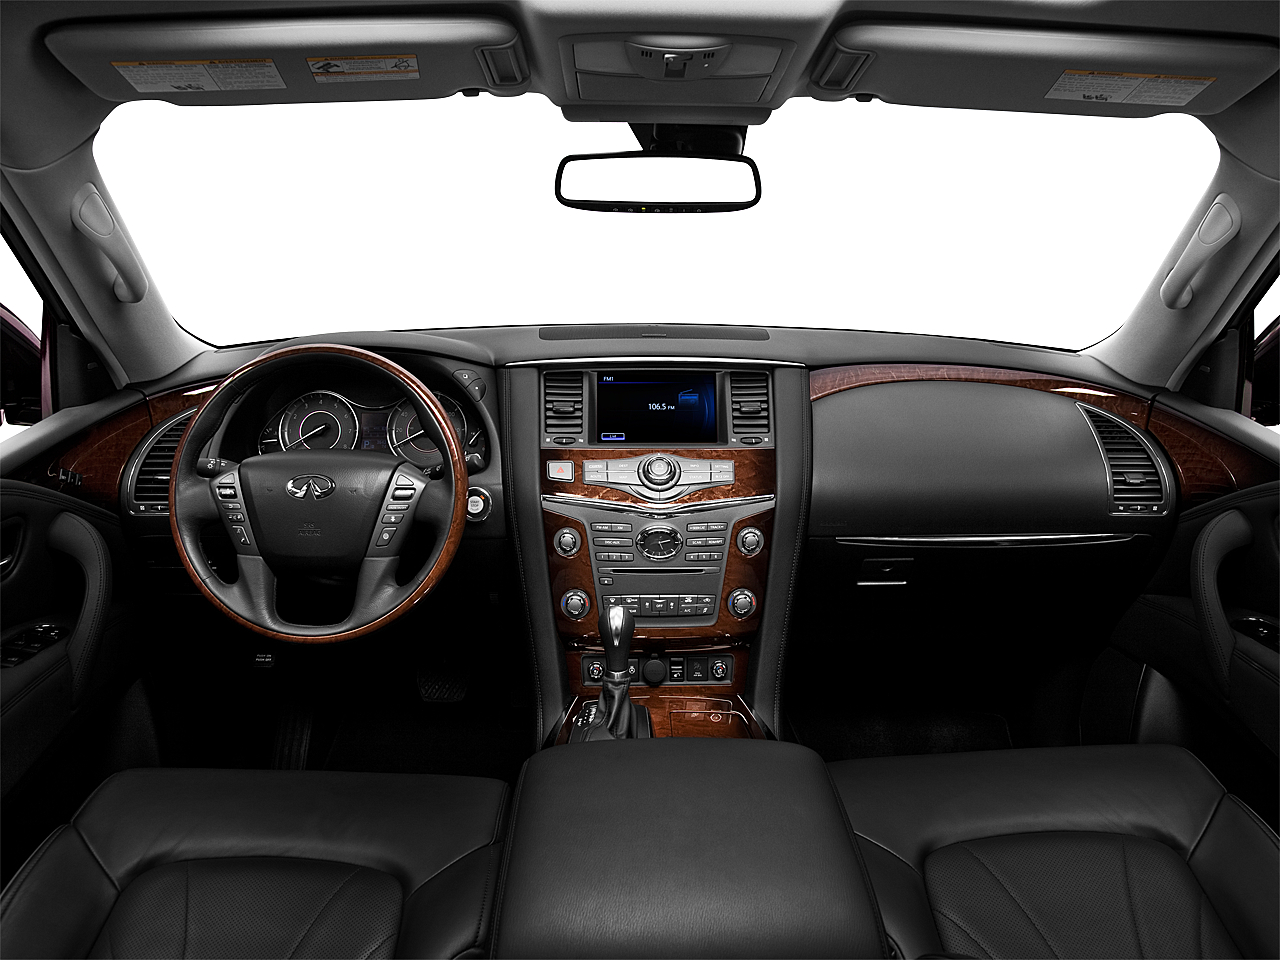 Infiniti QX56 interior - Cockpit